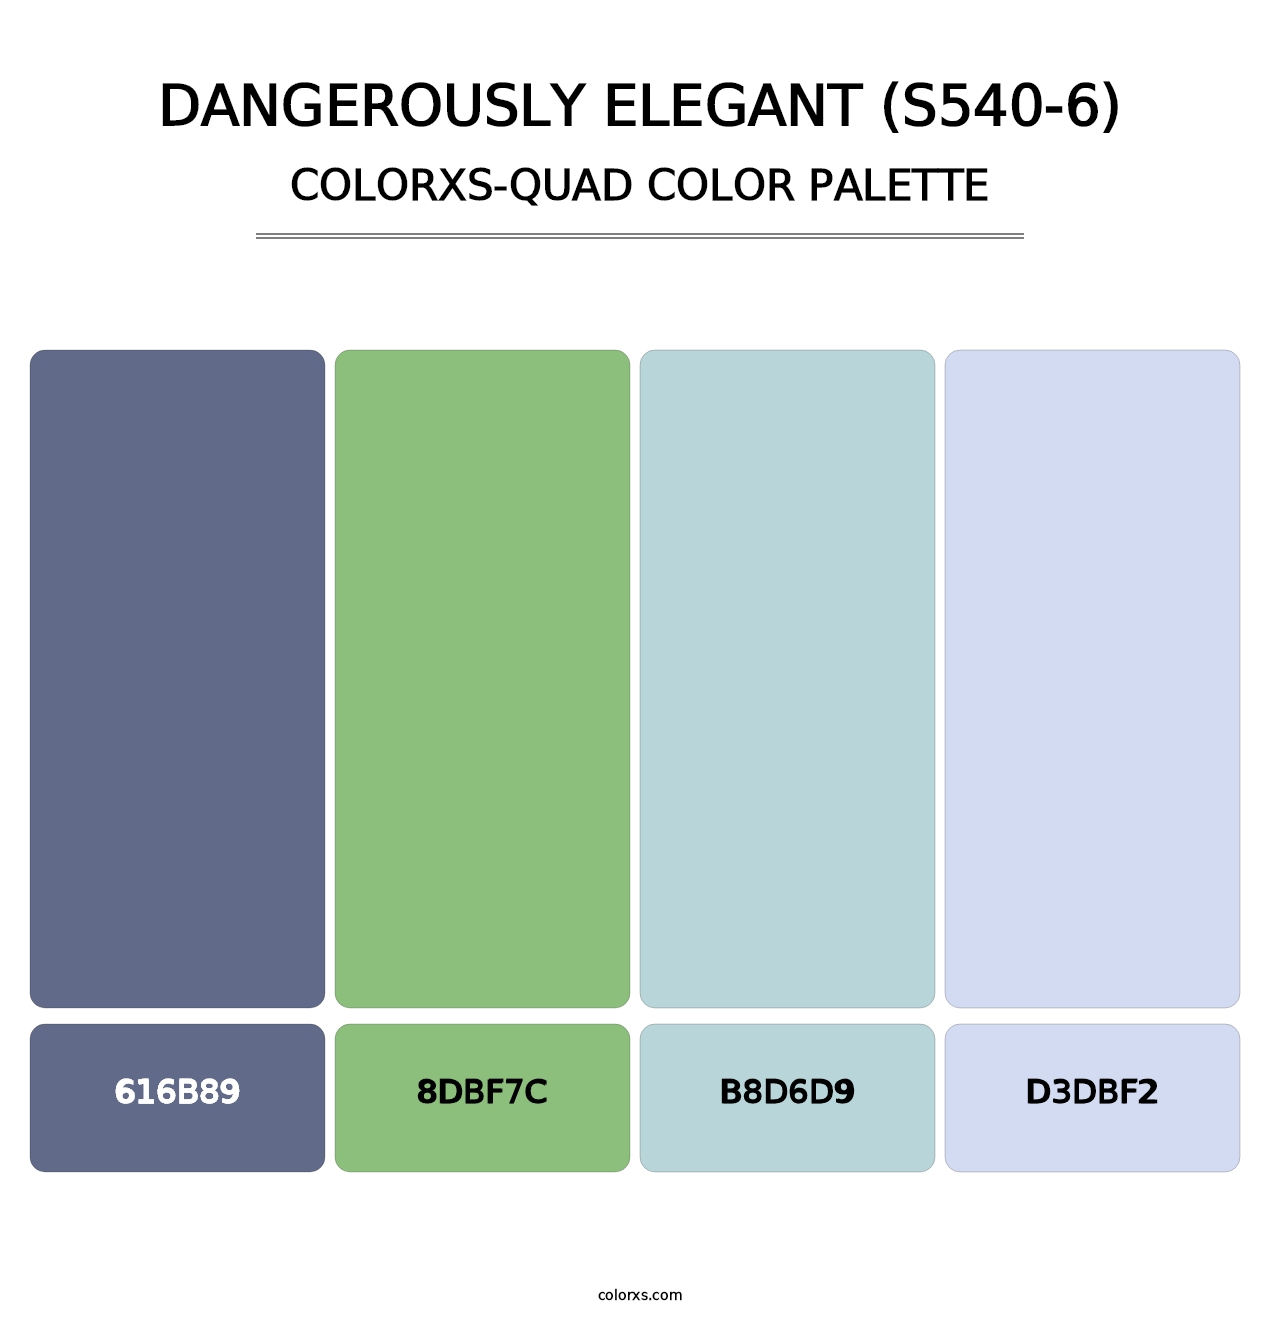 Dangerously Elegant (S540-6) - Colorxs Quad Palette